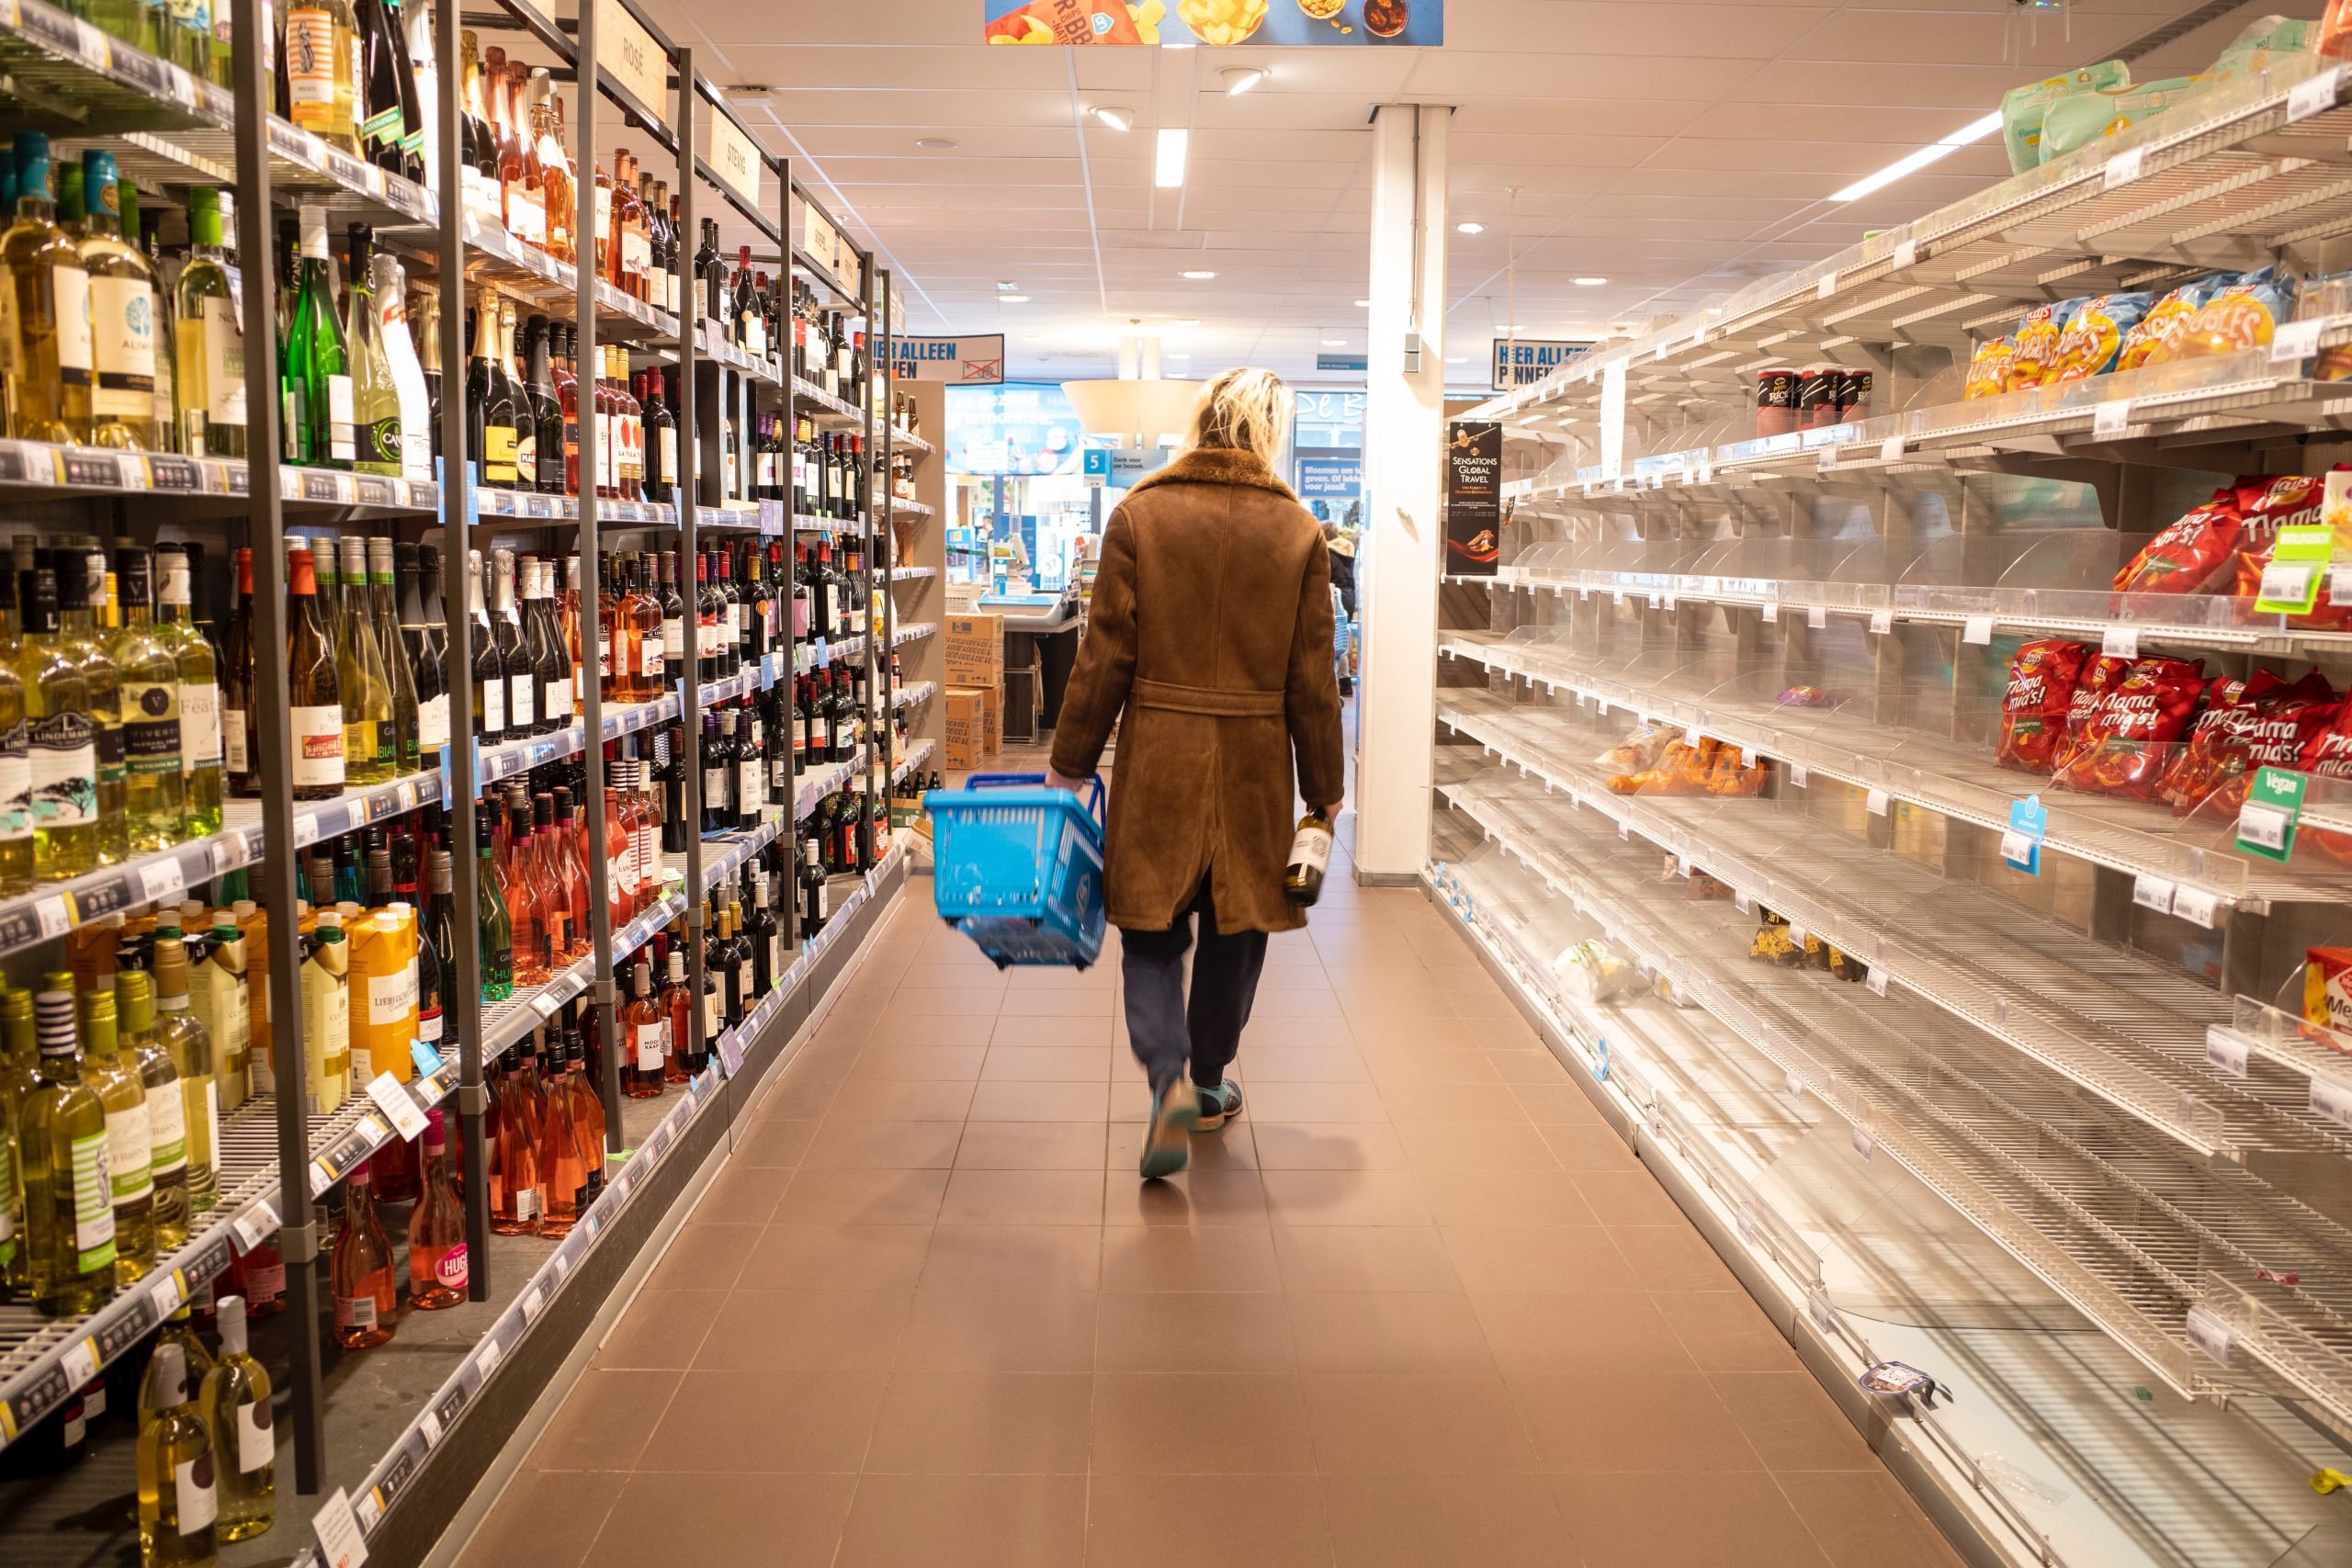 Rubano alcolici per 160 euro da un supermercato ma vengono scoperti dalla vigilanza